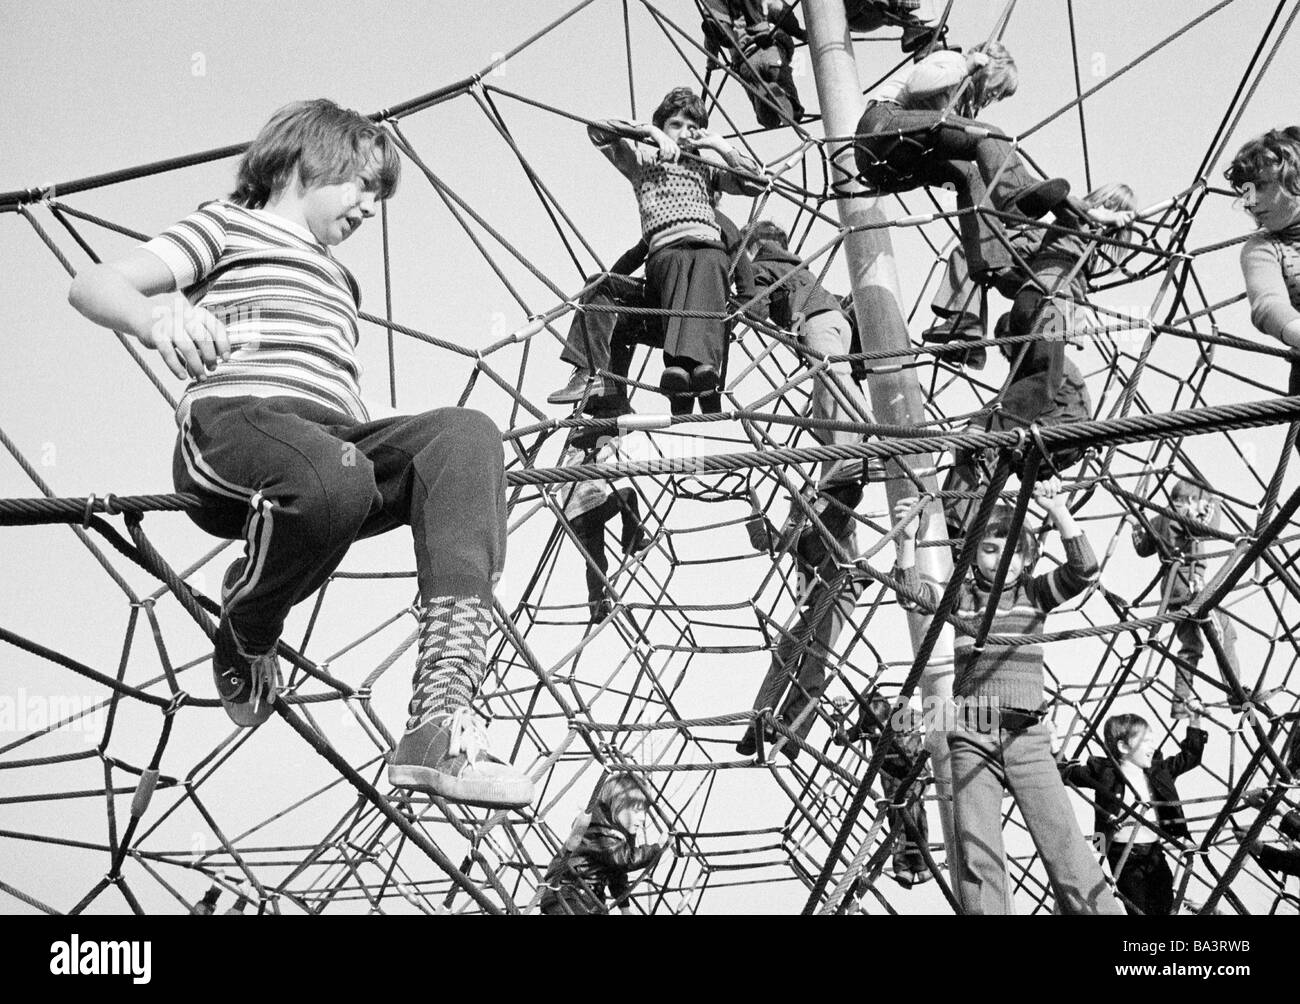 Negli anni settanta, foto in bianco e nero, le persone, i bambini, i ragazzi e le ragazze su una scimmia bar, parco giochi per bambini, di età compresa tra i 8 e i 10 anni, parco divertimenti Vonderort, D-Oberhausen, la zona della Ruhr, Renania settentrionale-Vestfalia Foto Stock